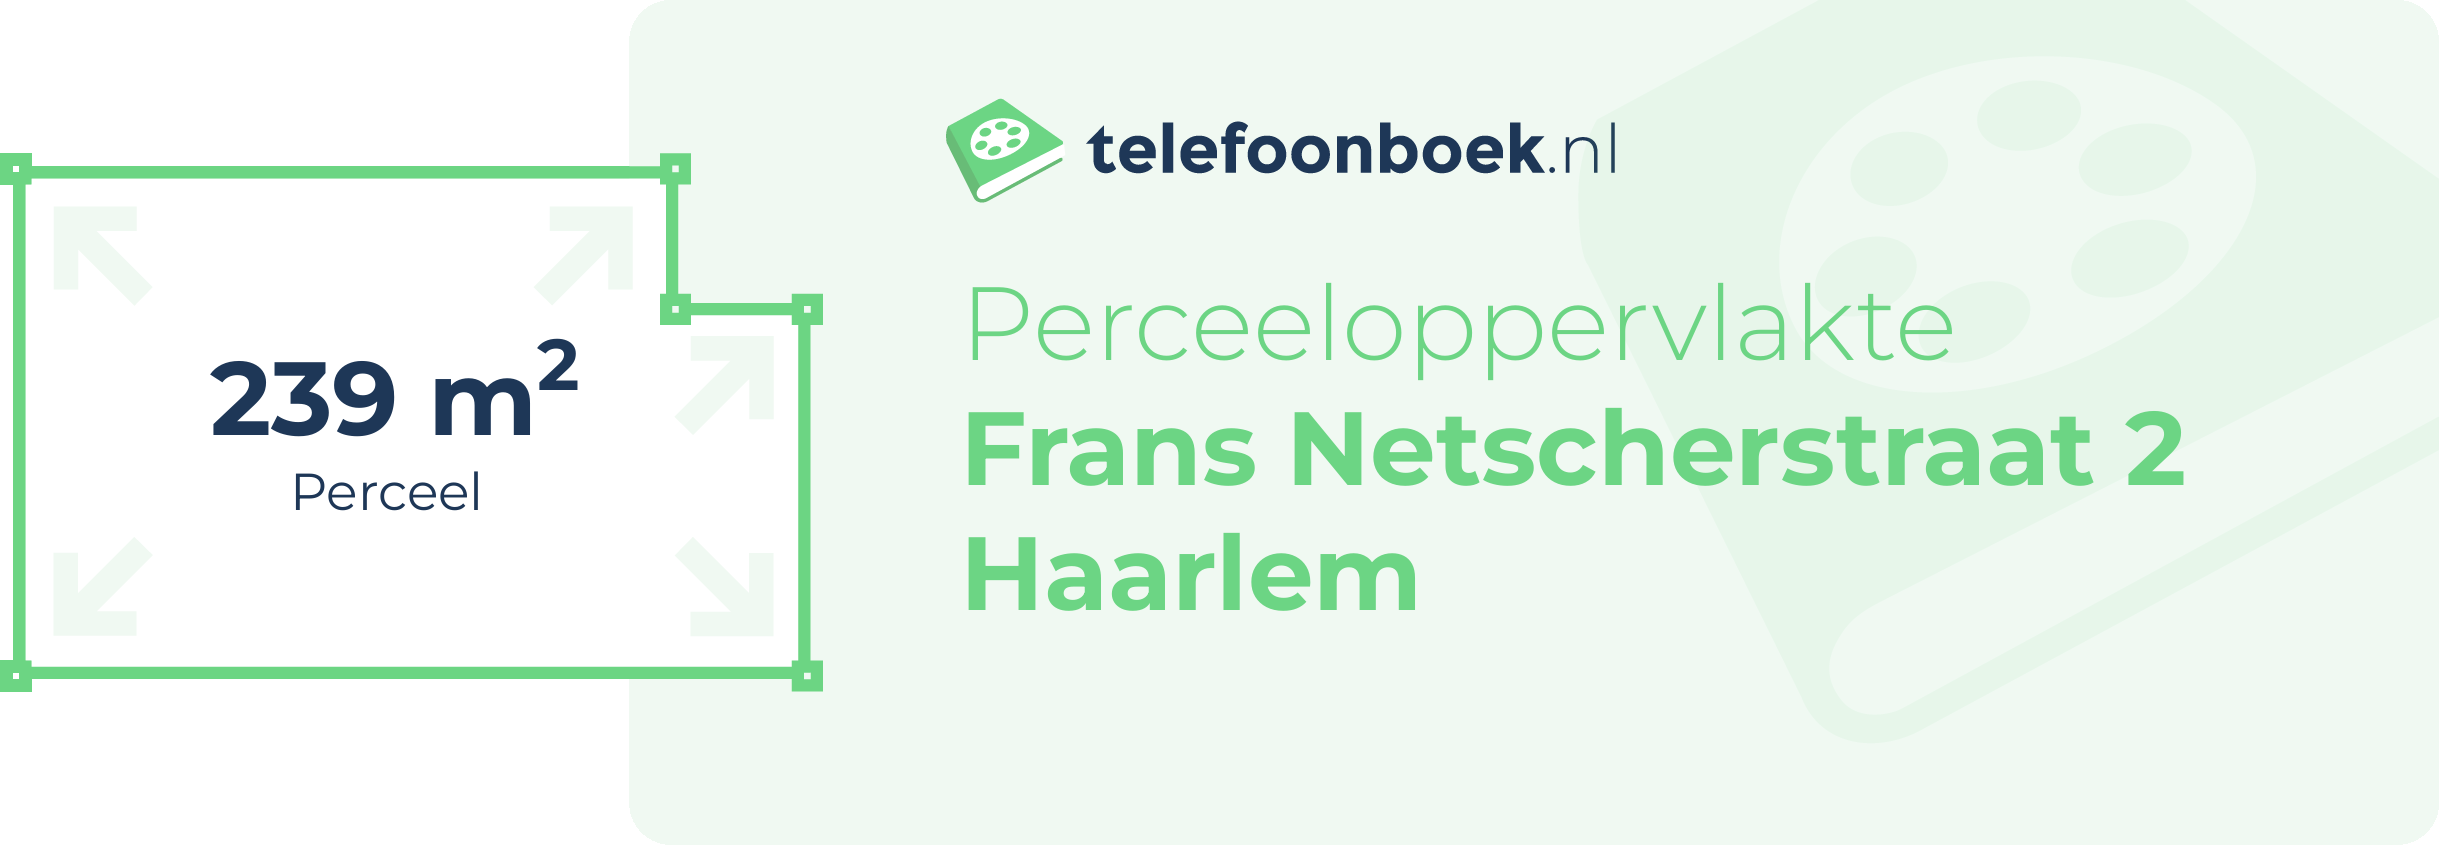 Perceeloppervlakte Frans Netscherstraat 2 Haarlem